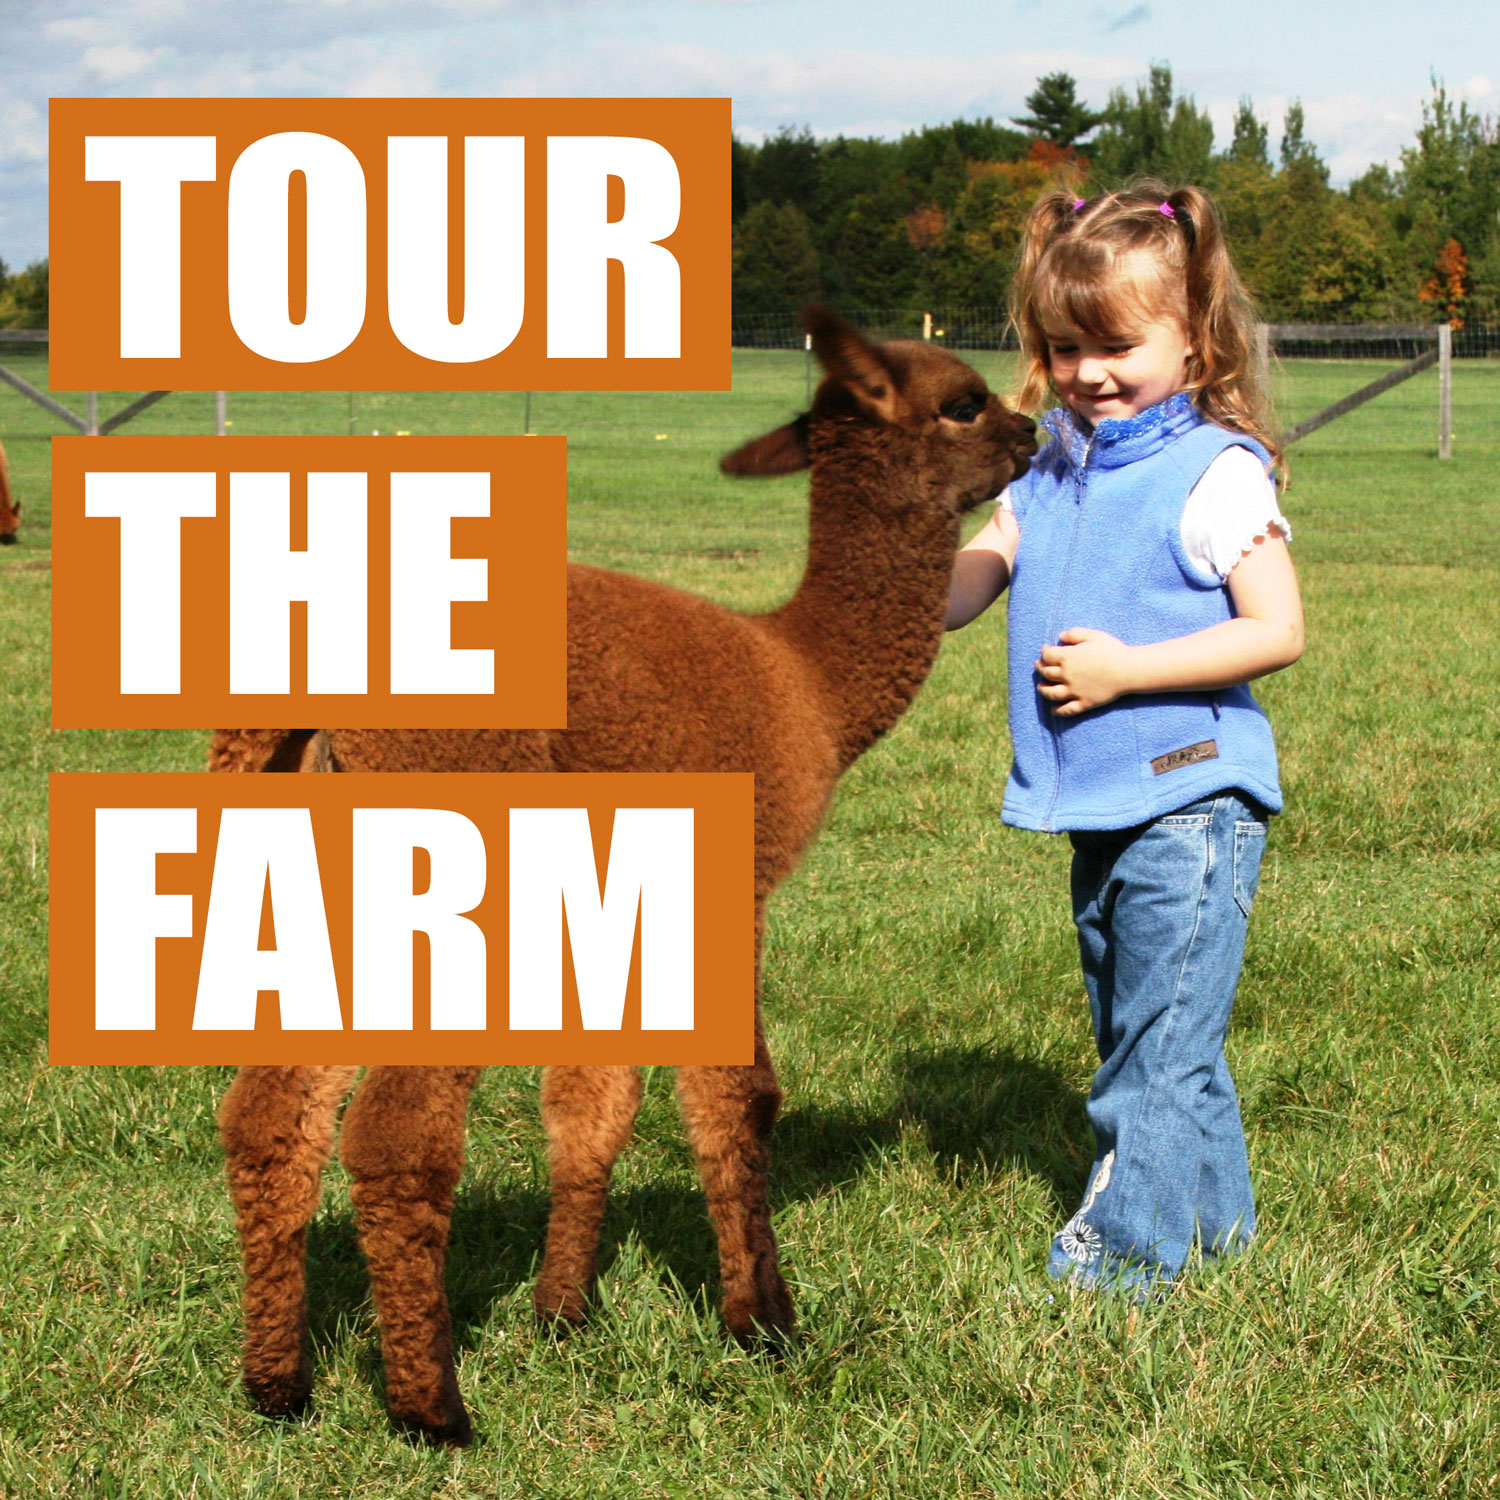 family farm tours near me